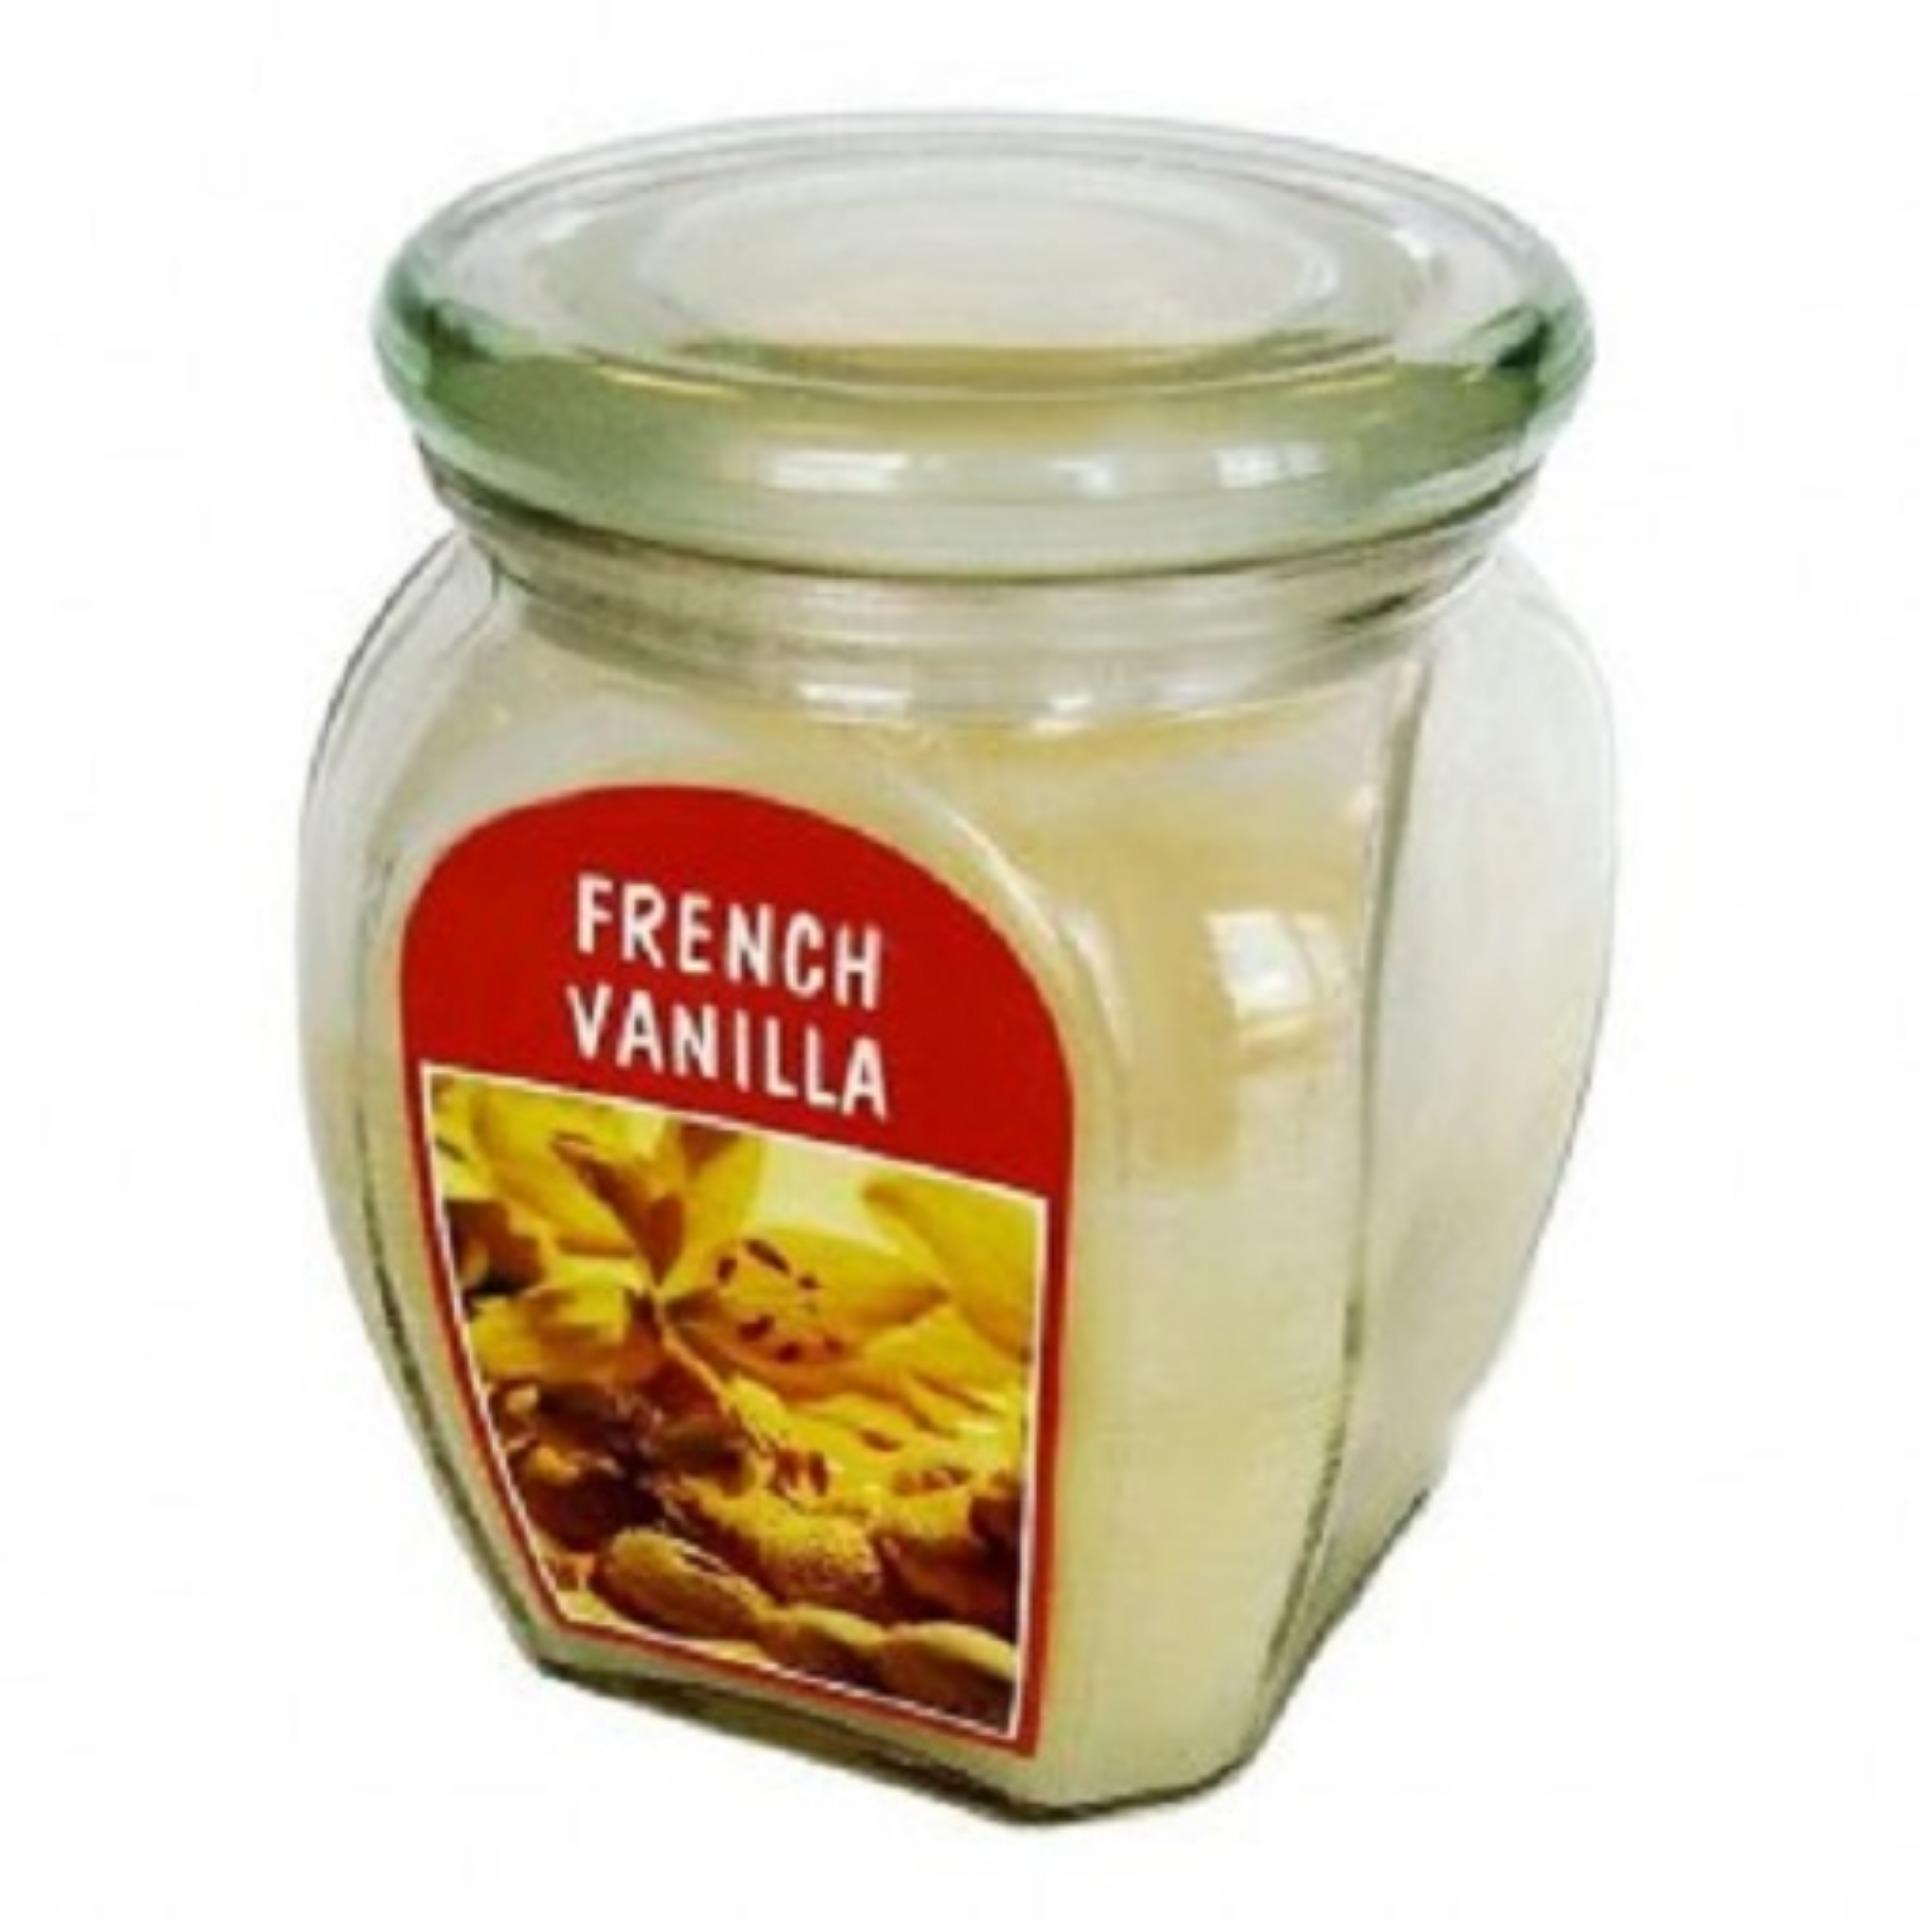 Hũ nến thơm Bolsius French Vanilla BOL7964 540g (Hương Vani)